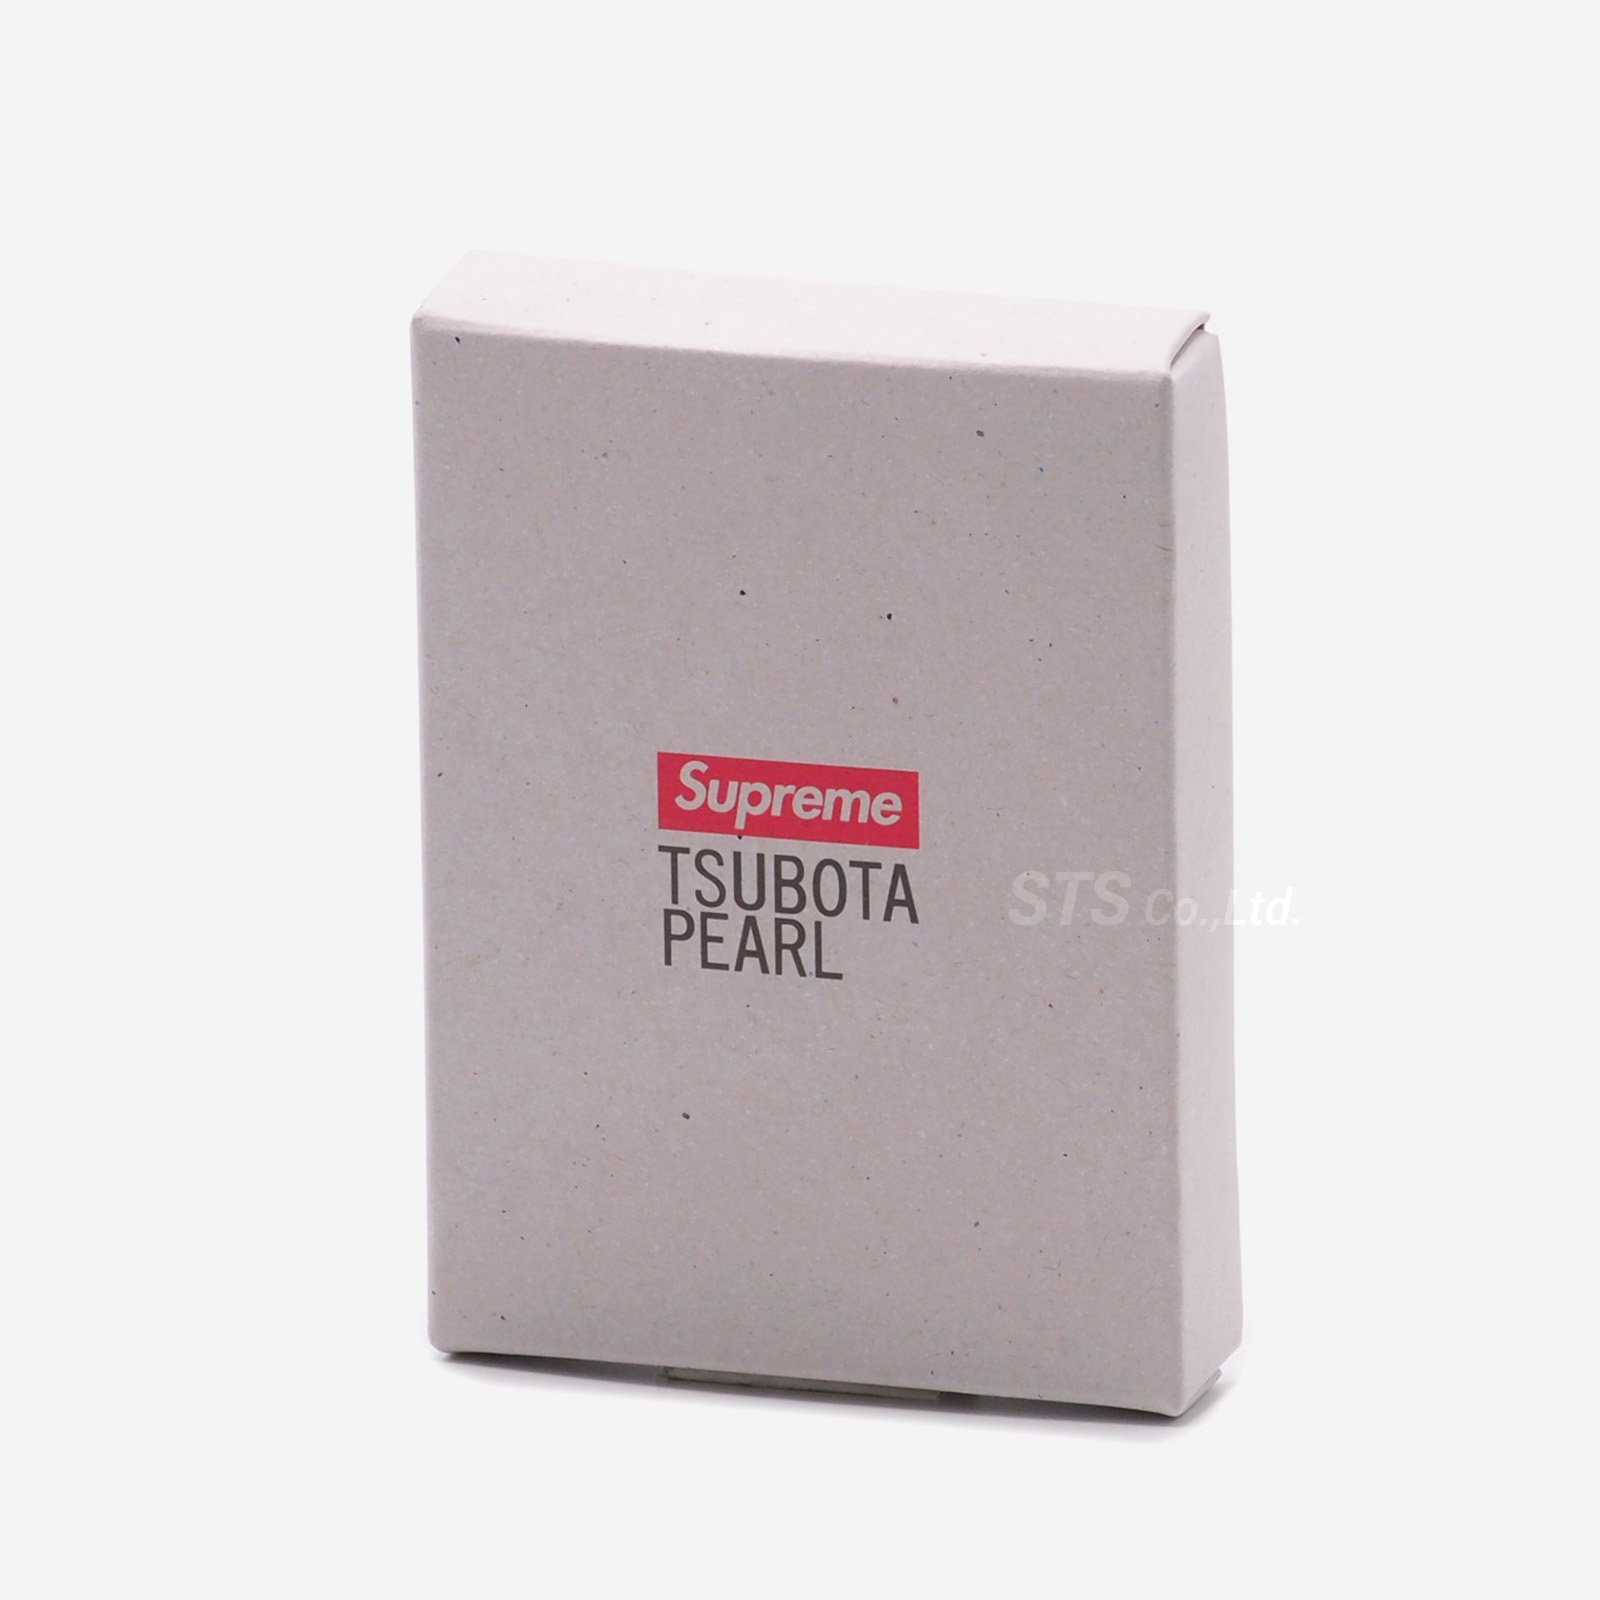 Supreme/Tsubota Pearl Hard Edge Lighter - ParkSIDER